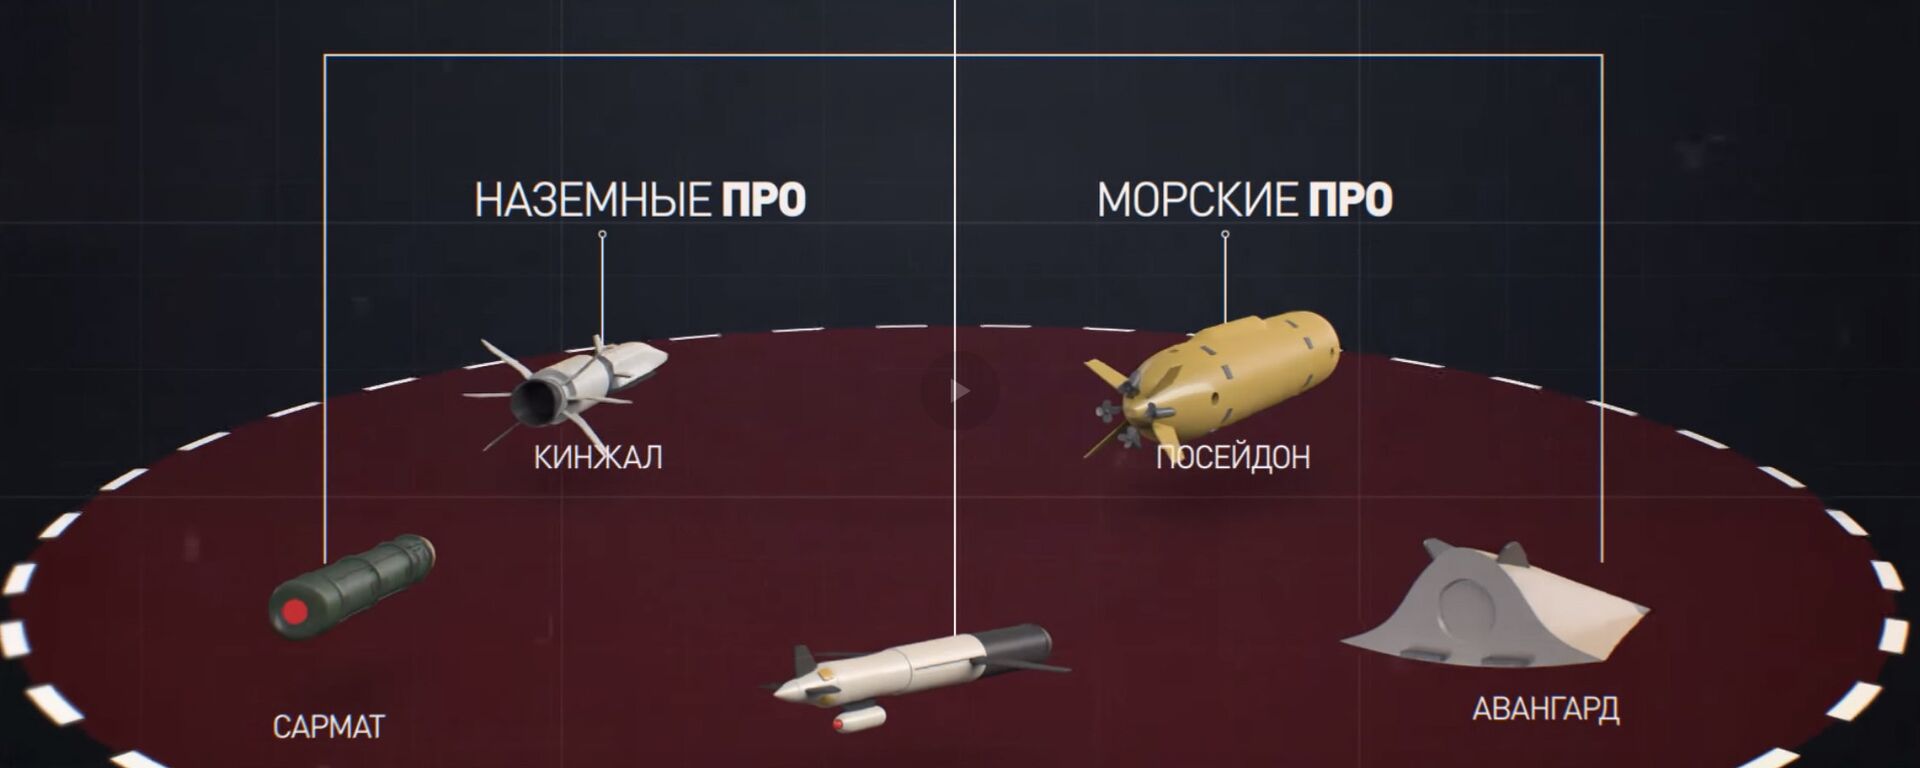 В авангарде обороны: как новейшее российское вооружение поможет восстановить ядерный паритет - Sputnik Latvija, 1920, 15.11.2019